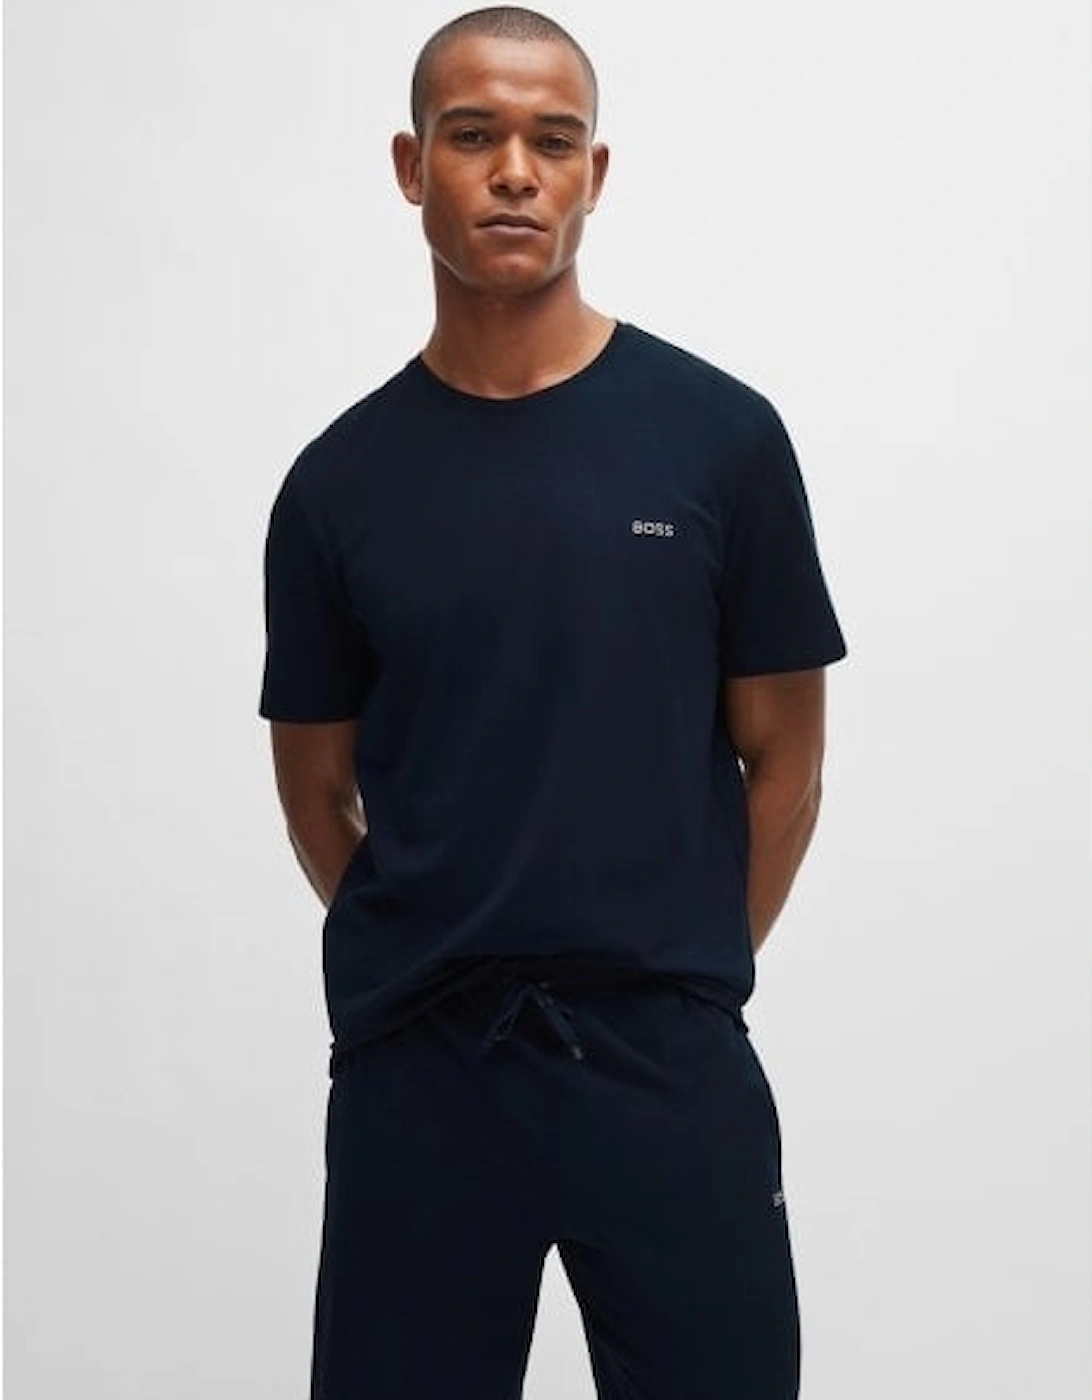 Luxe Jersey Crew-Neck Loungewear T-Shirt, Navy